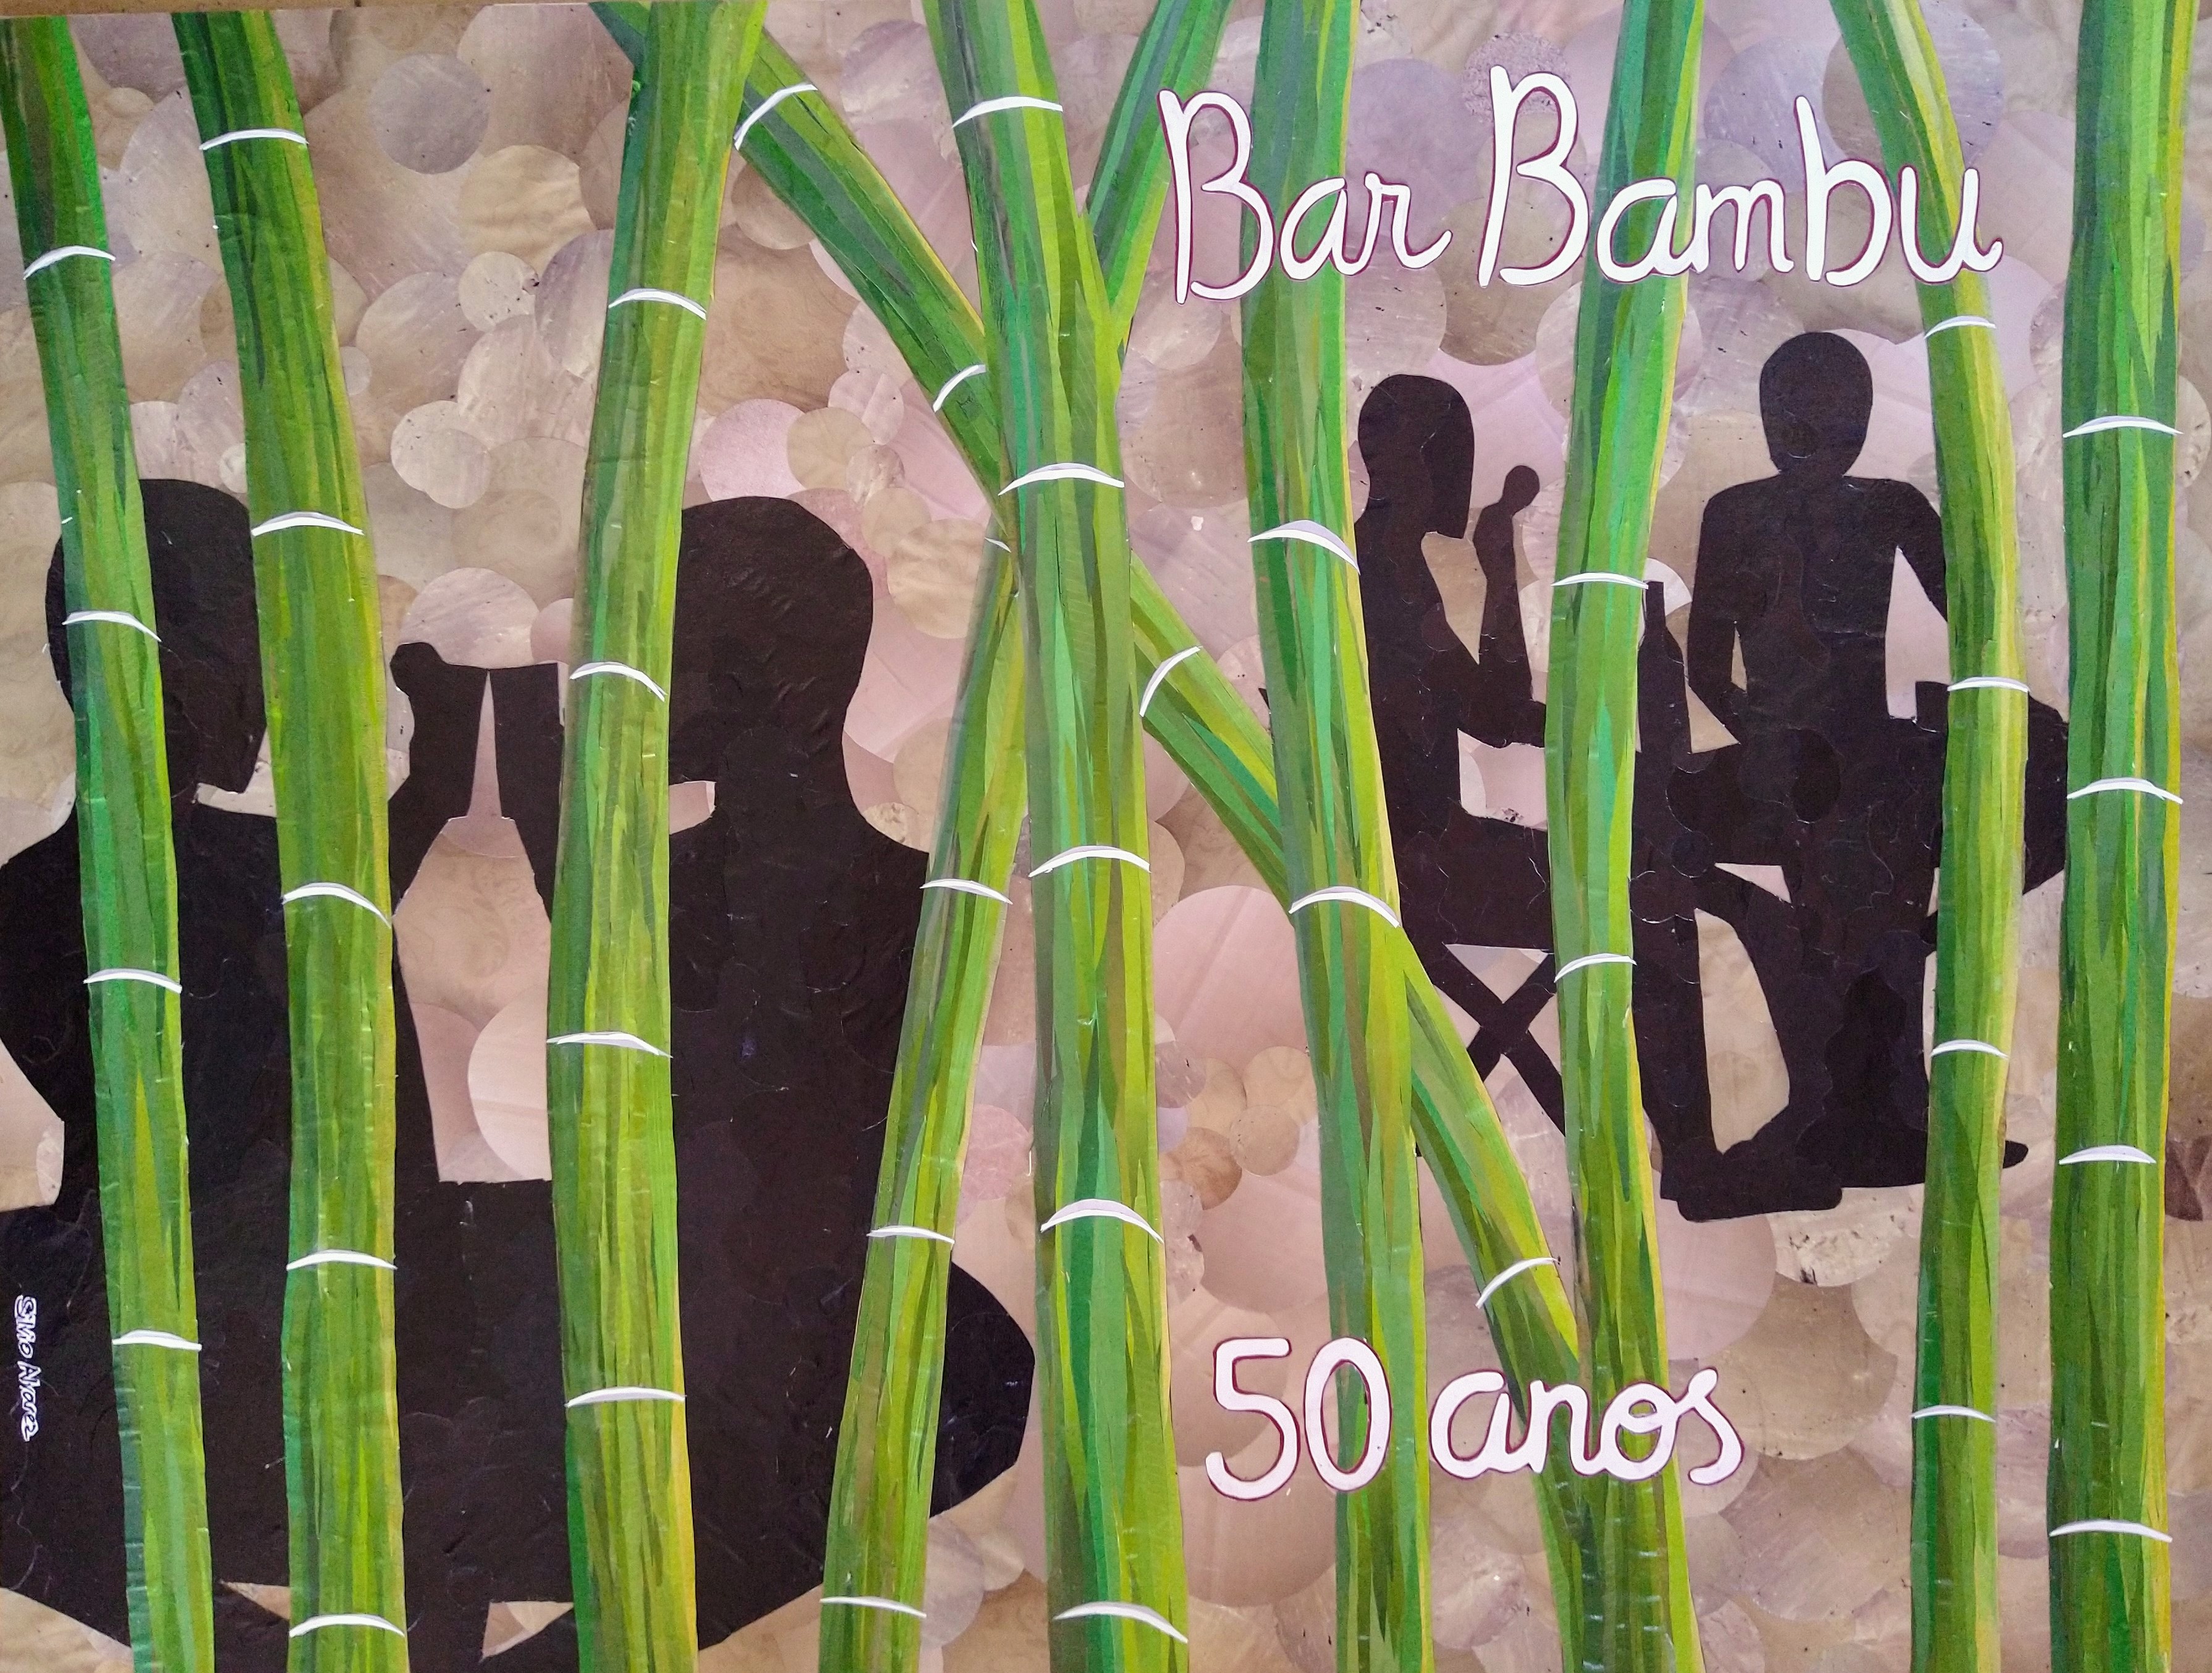 Bar bambu- 50 anos